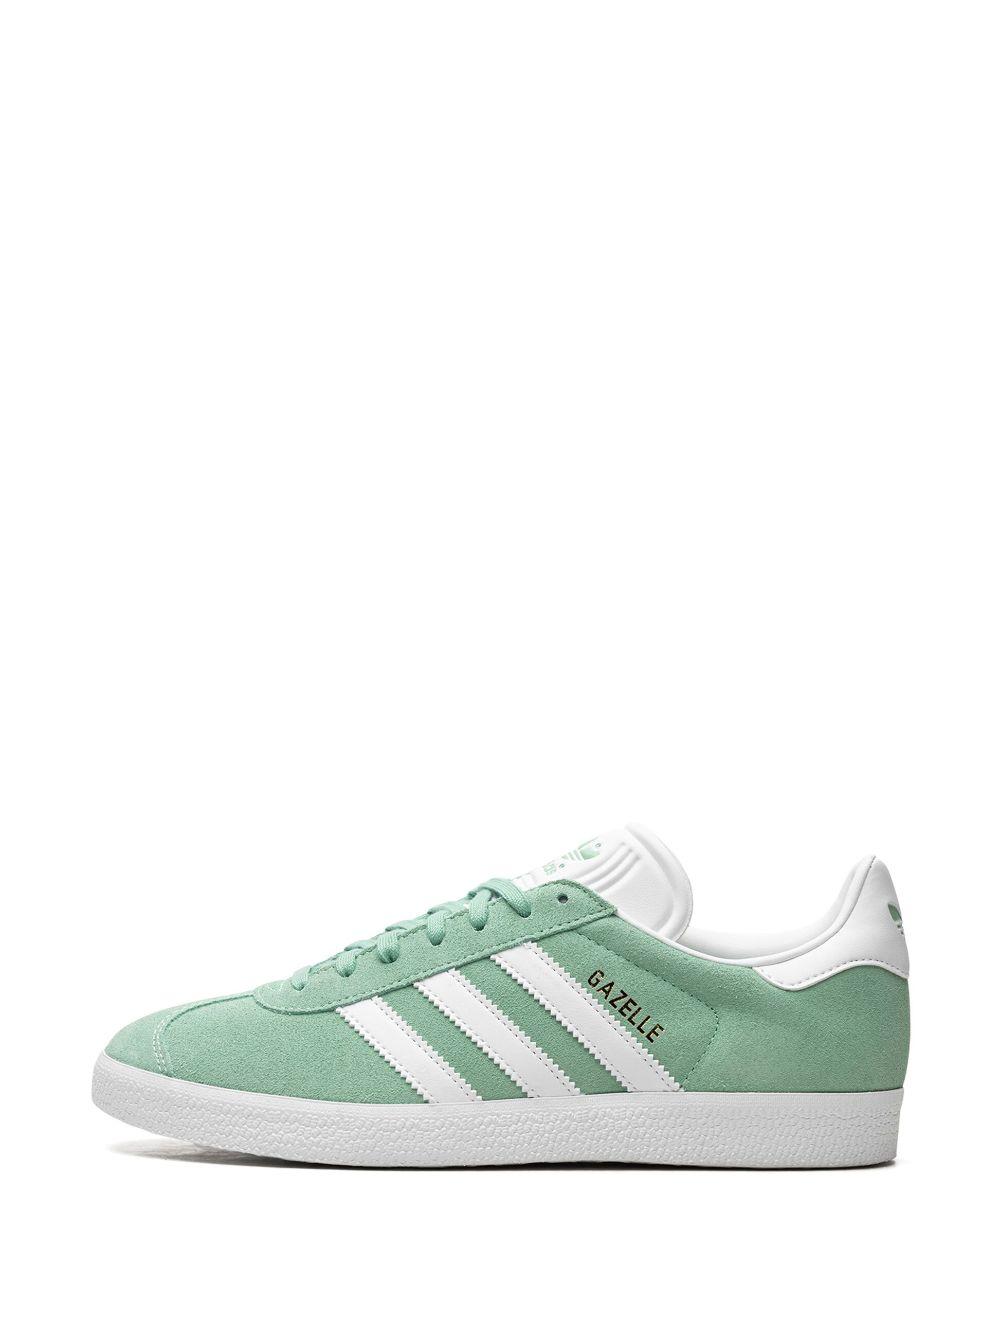 adidas Gazelle Low-top Sneakers in Green | Lyst